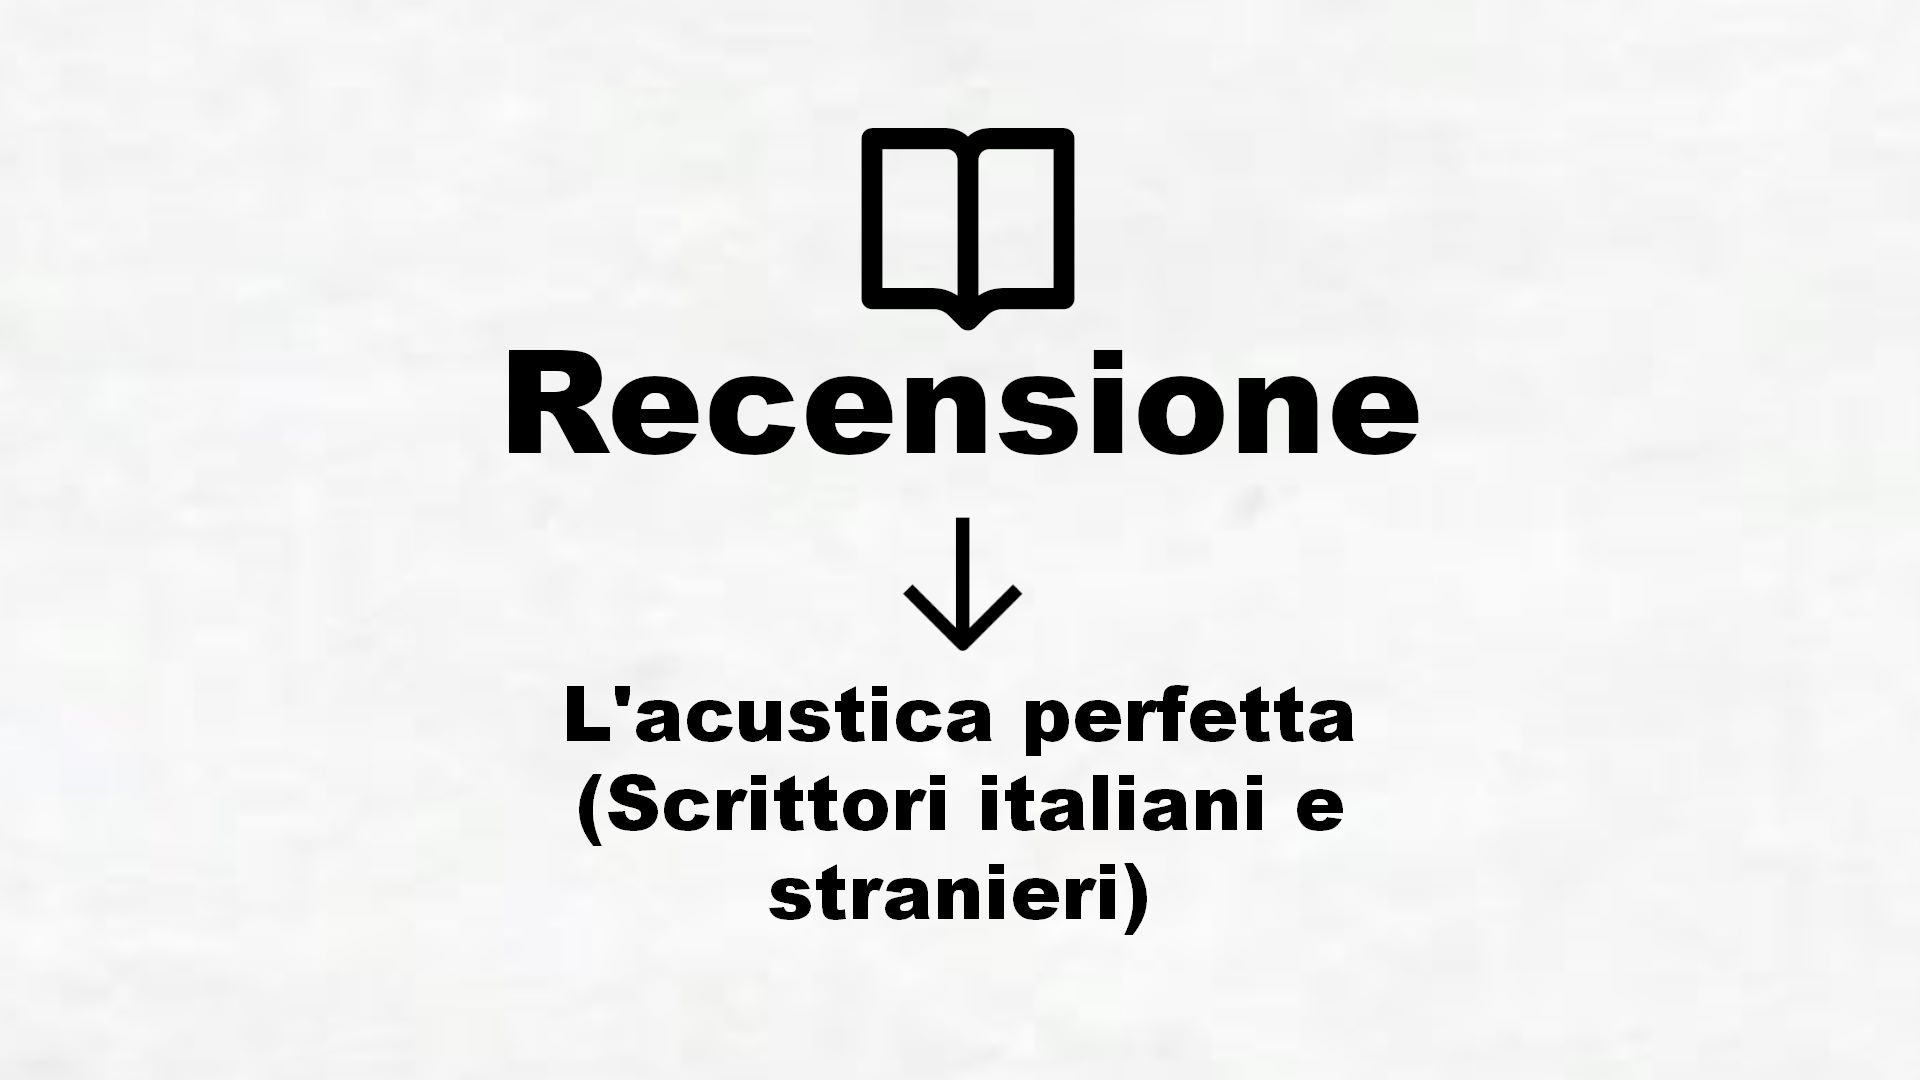 L’acustica perfetta (Scrittori italiani e stranieri) – Recensione Libro